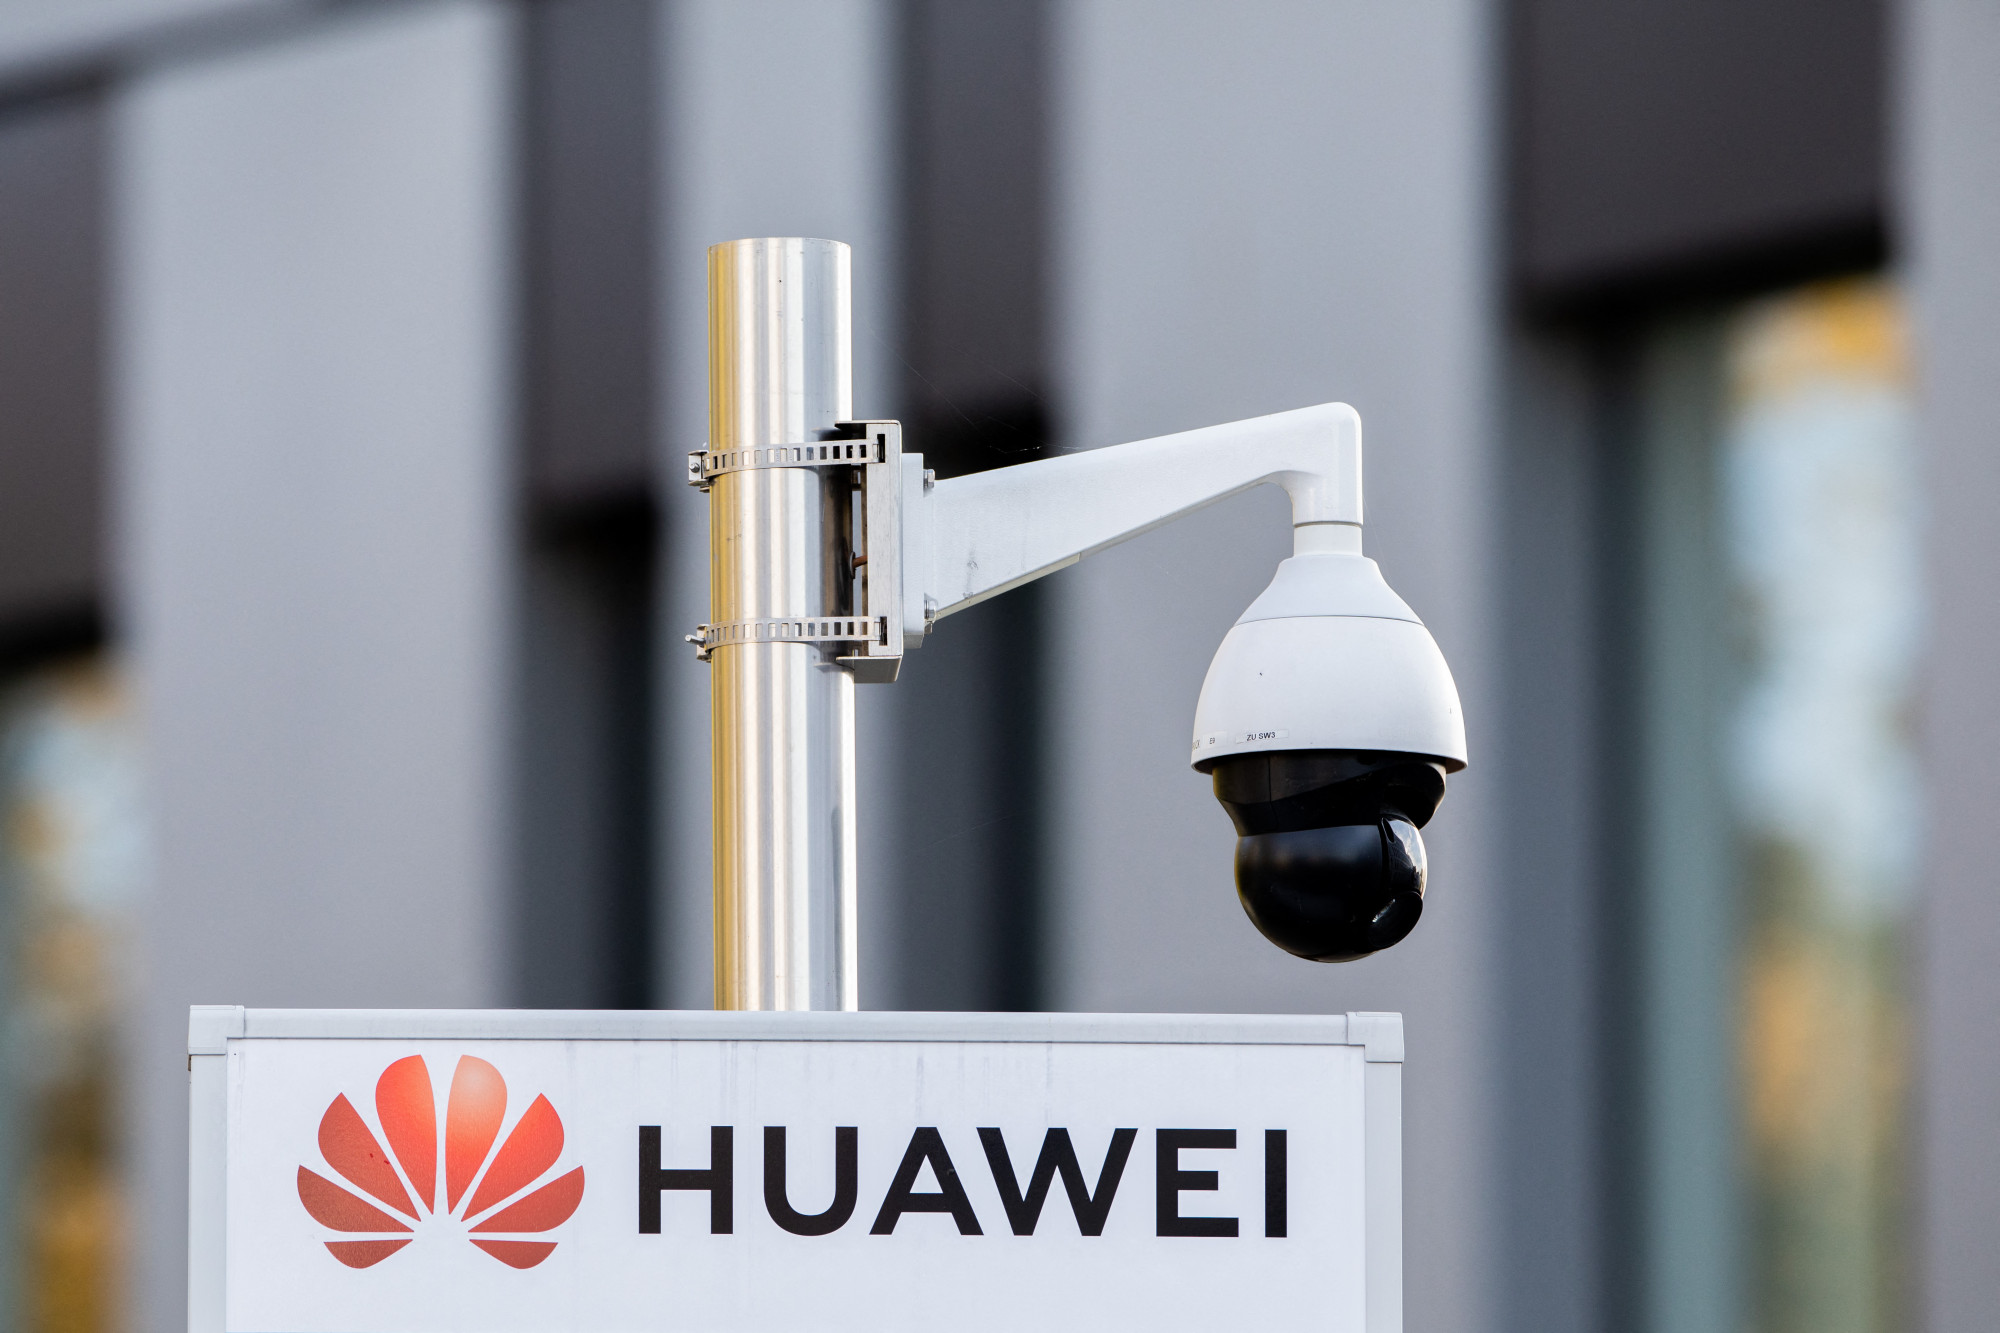 Nemzetbiztonsági okok miatt megtiltották a kínai Huawei eszközök használatát az 5G-hálózatokon